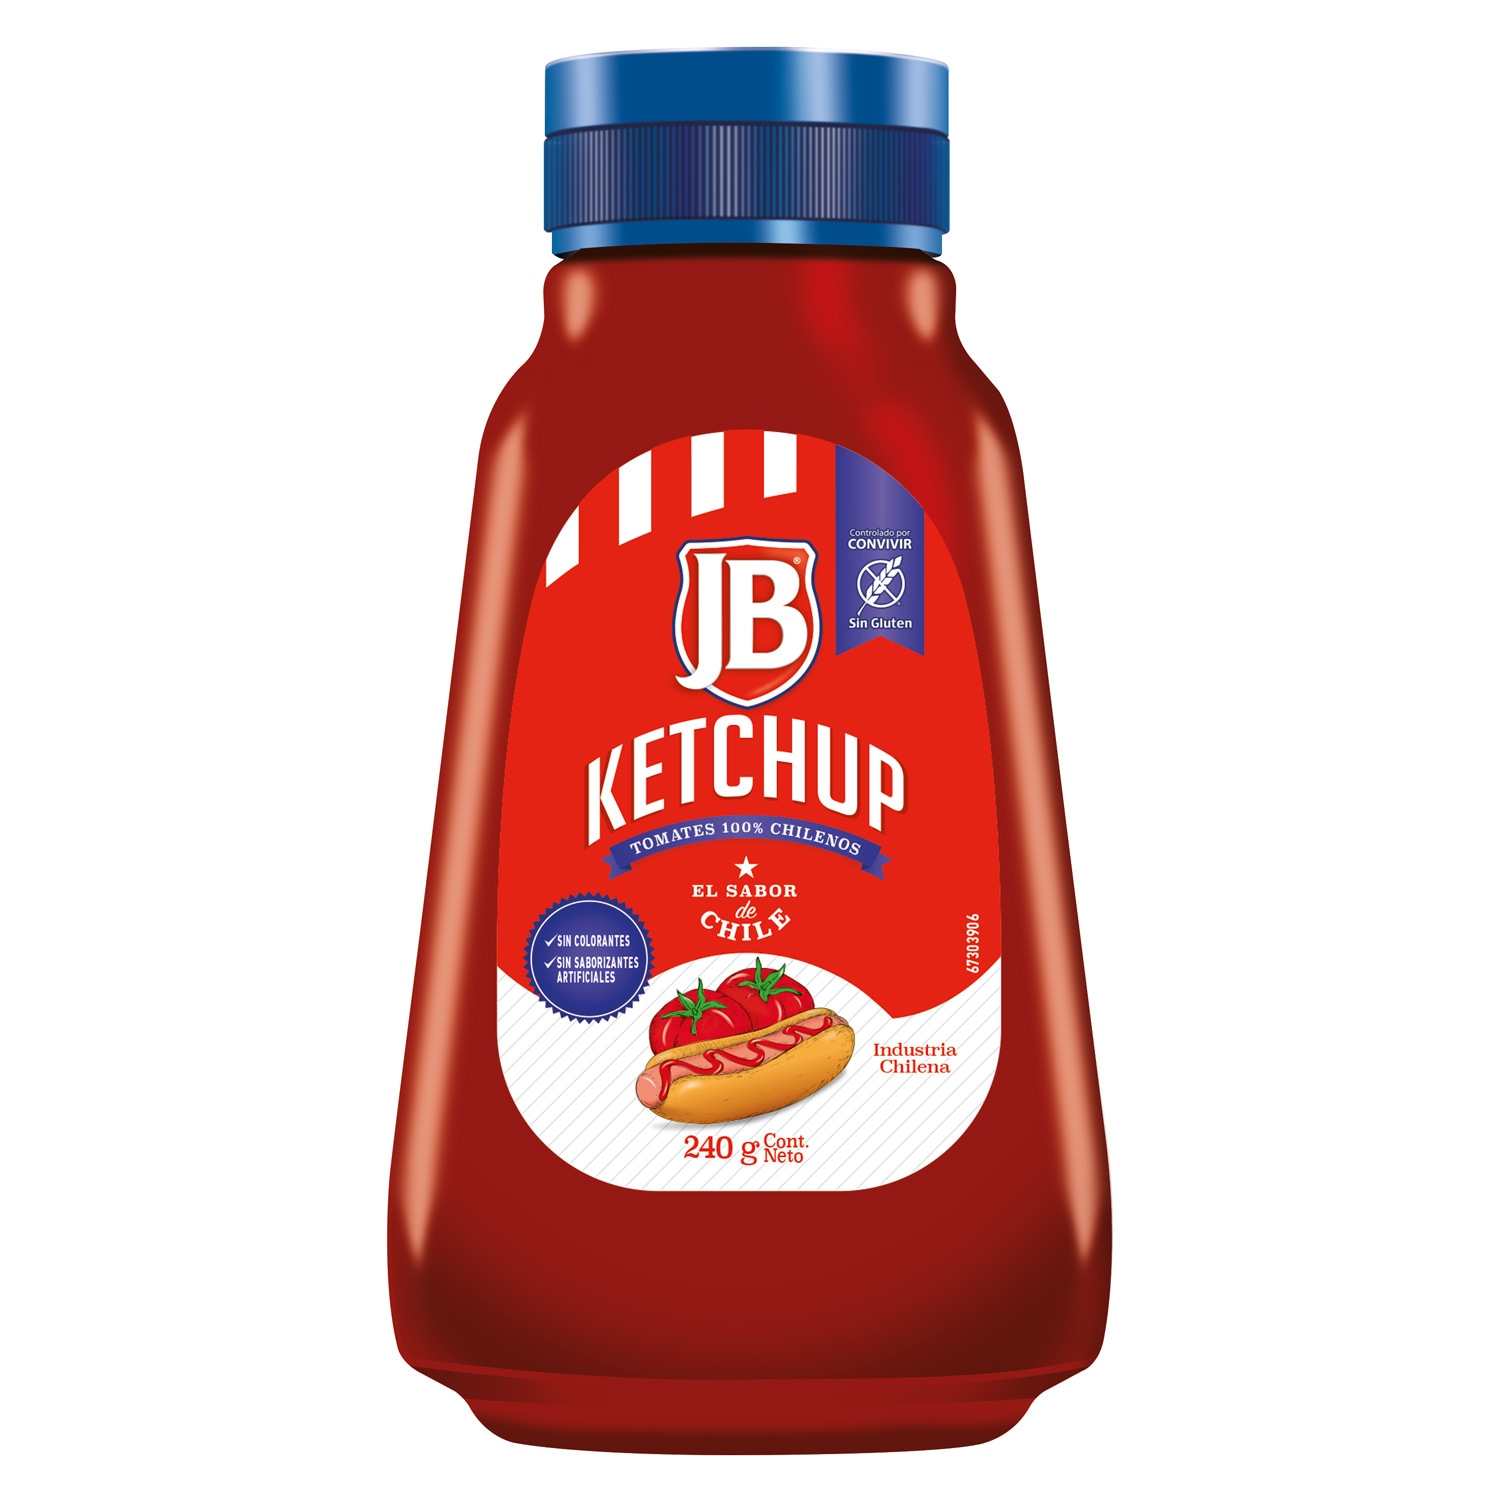 JB Ketchup 240 g - Ketchup JB, el sabor de Chile!